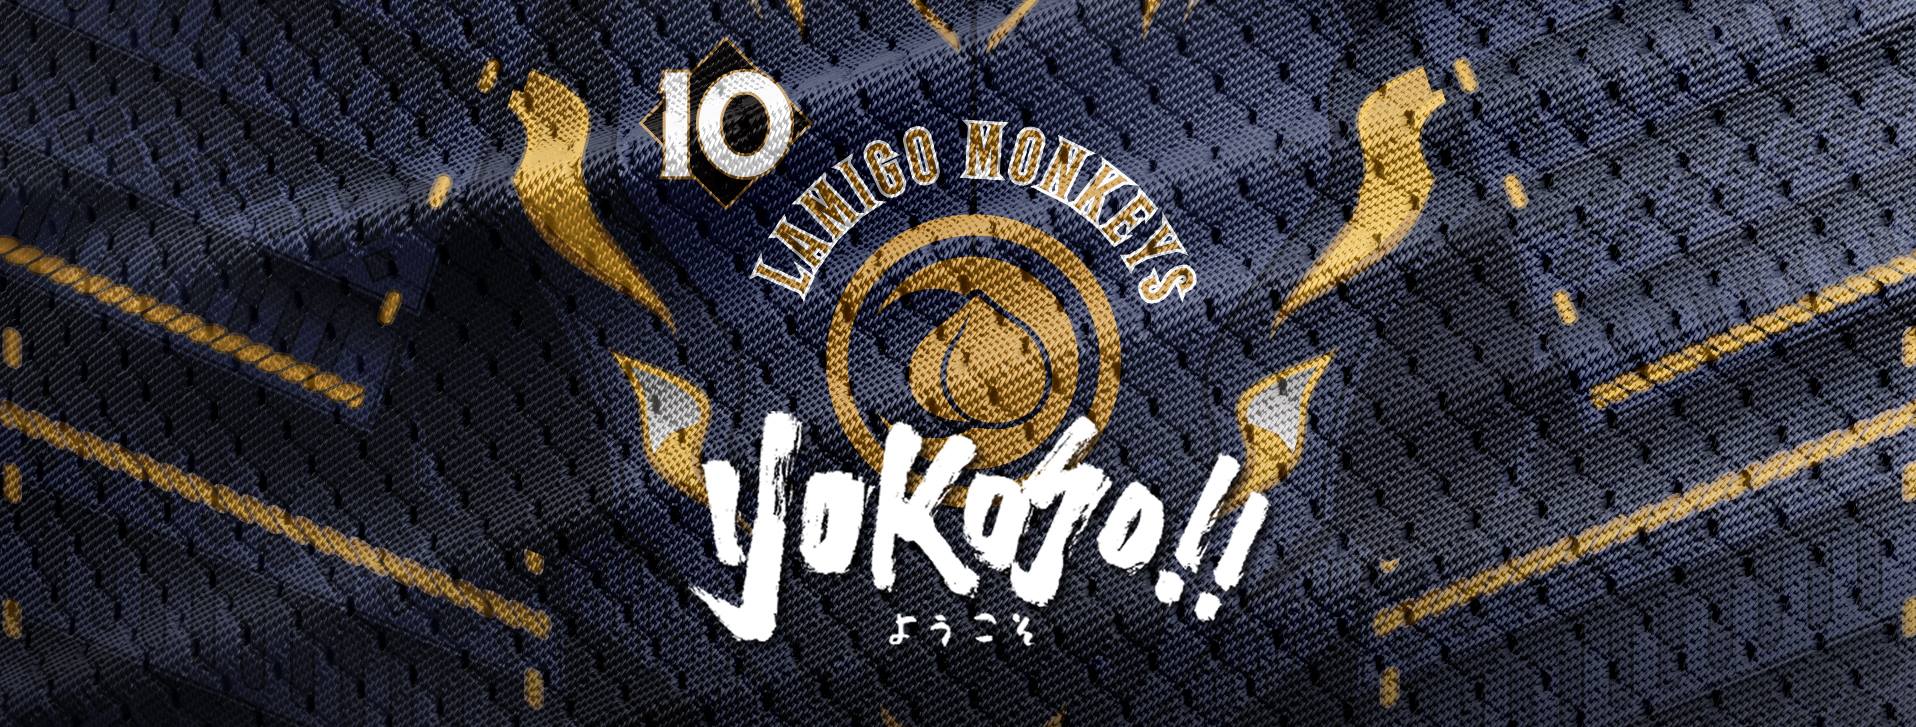 Lamigo Monkeys YOKOSO logo